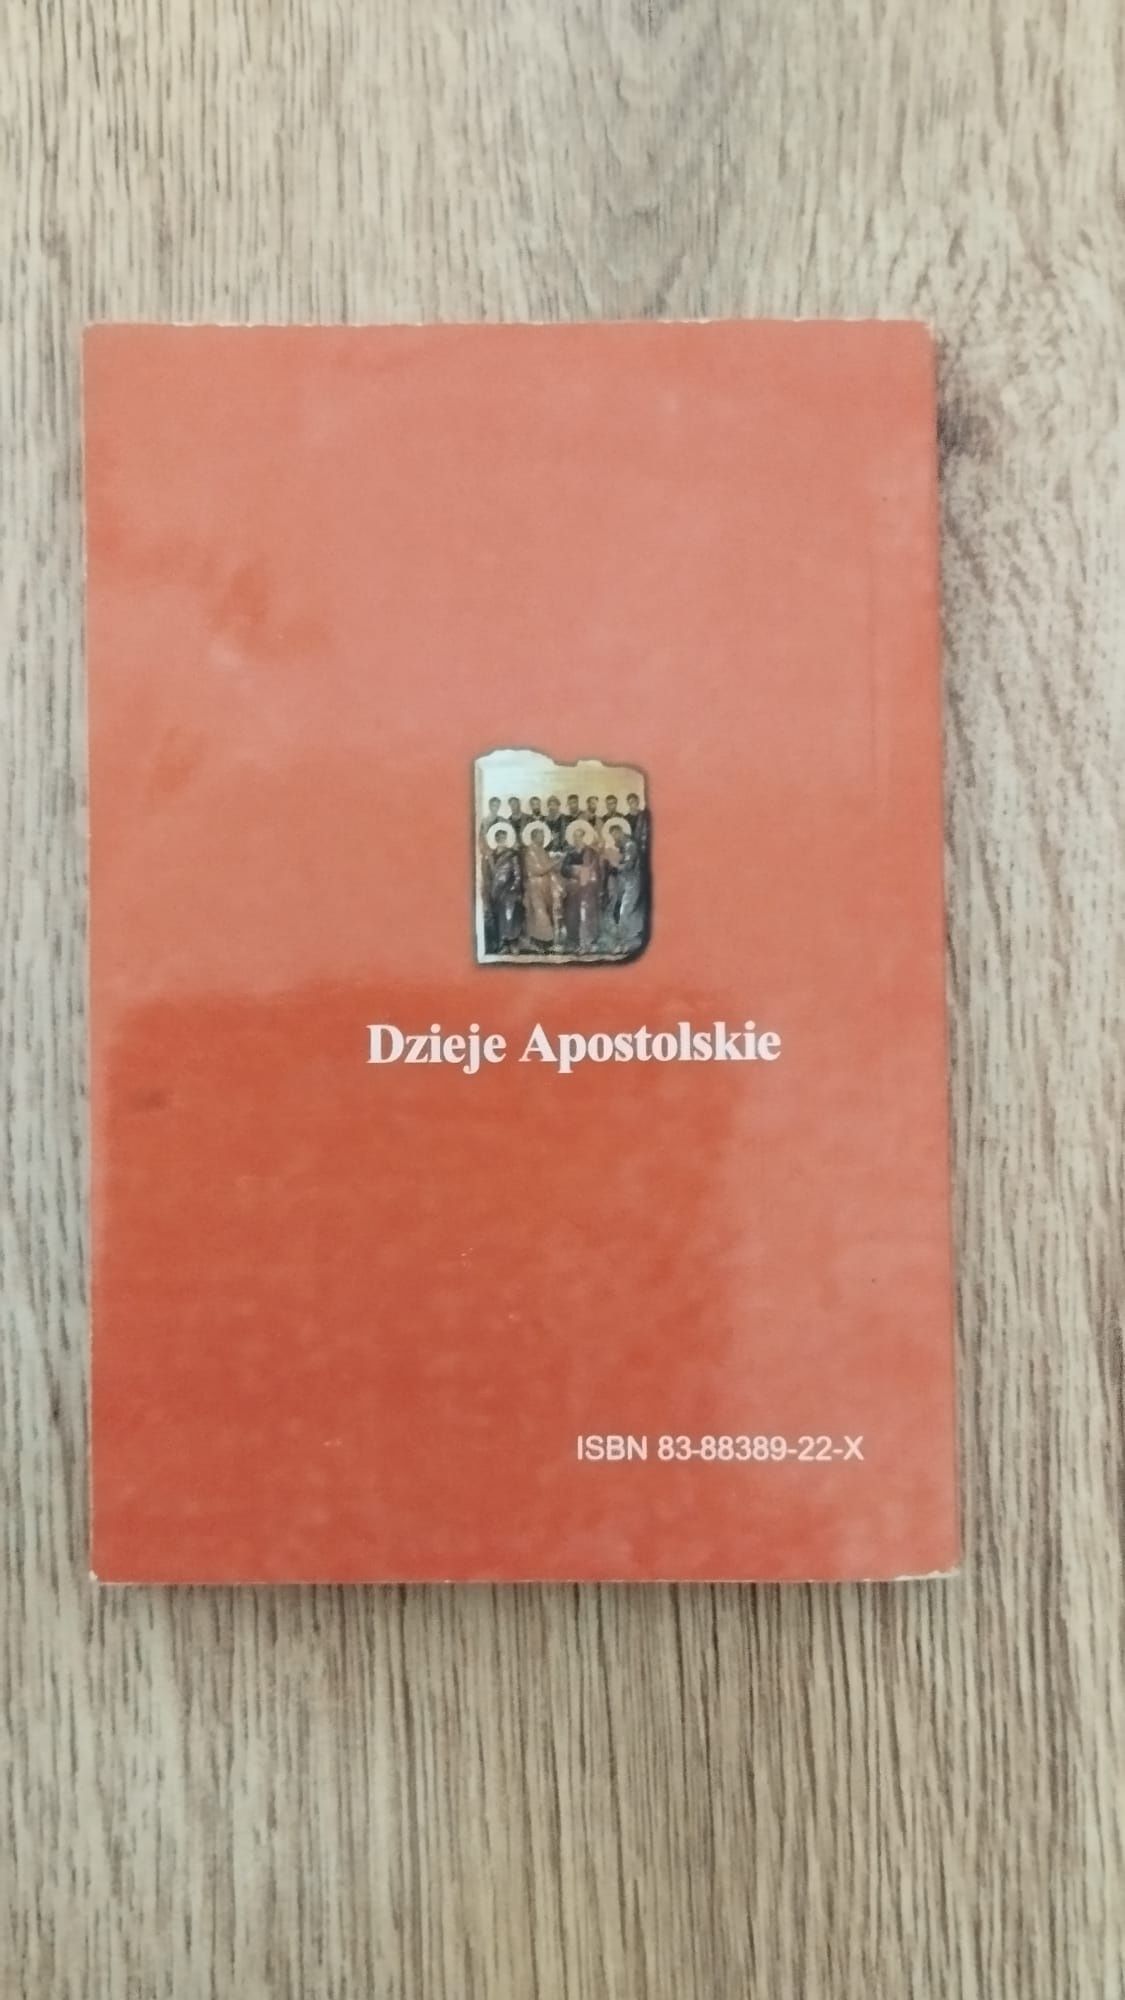 Książka Dzieje Apostolskie, Częstochowa 2000